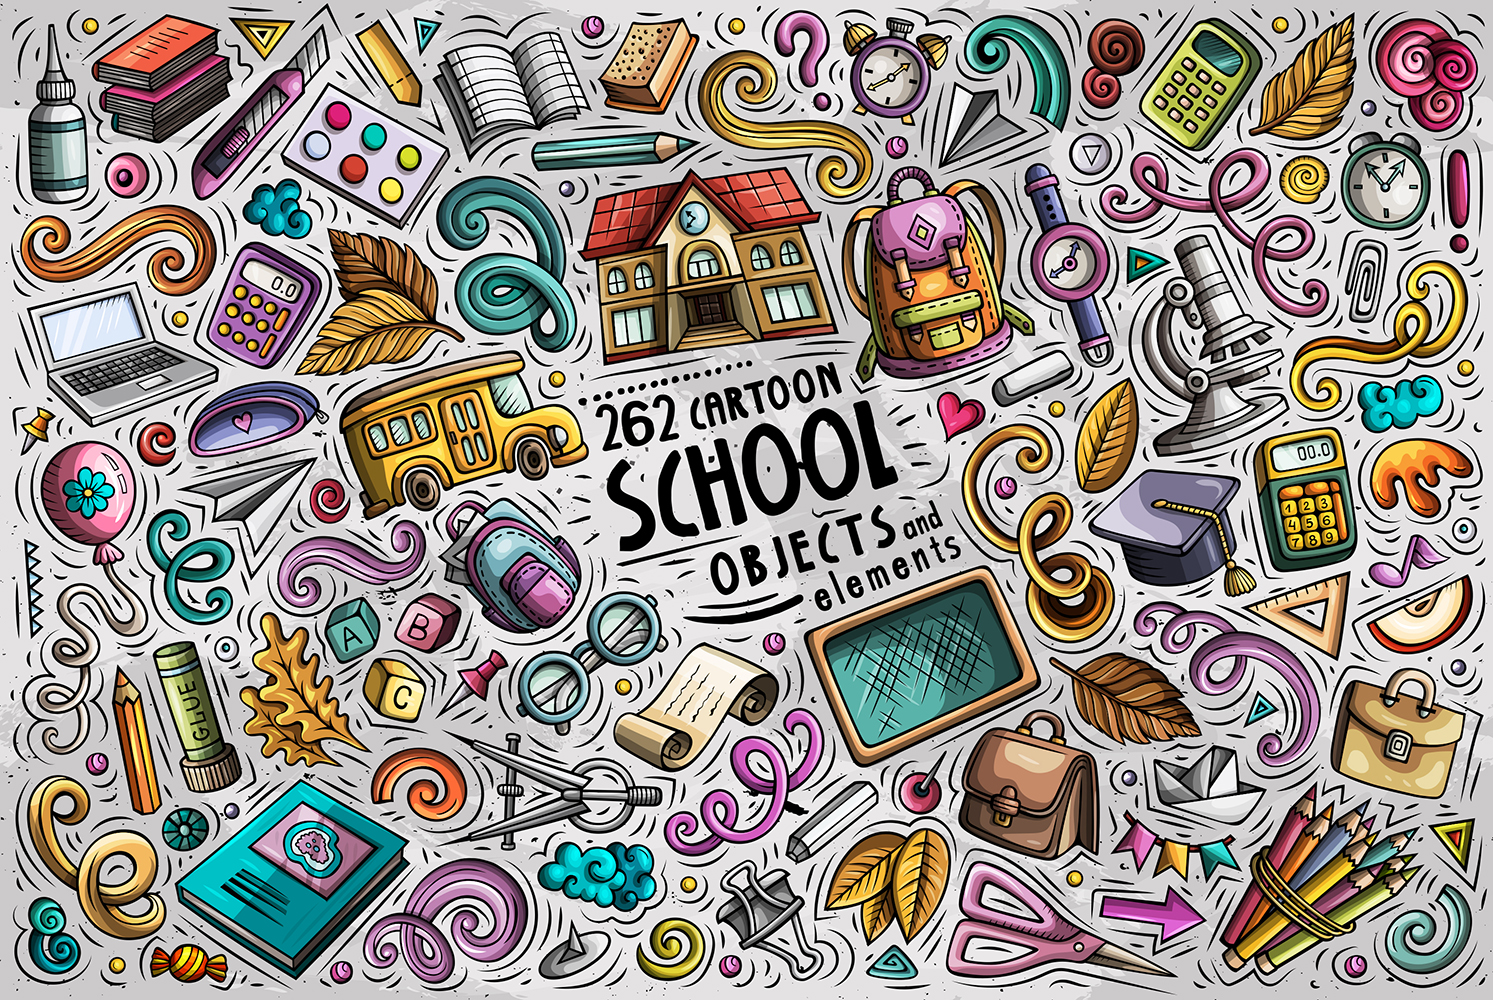 School Cartoon Doodle Objects Set - Vector Image